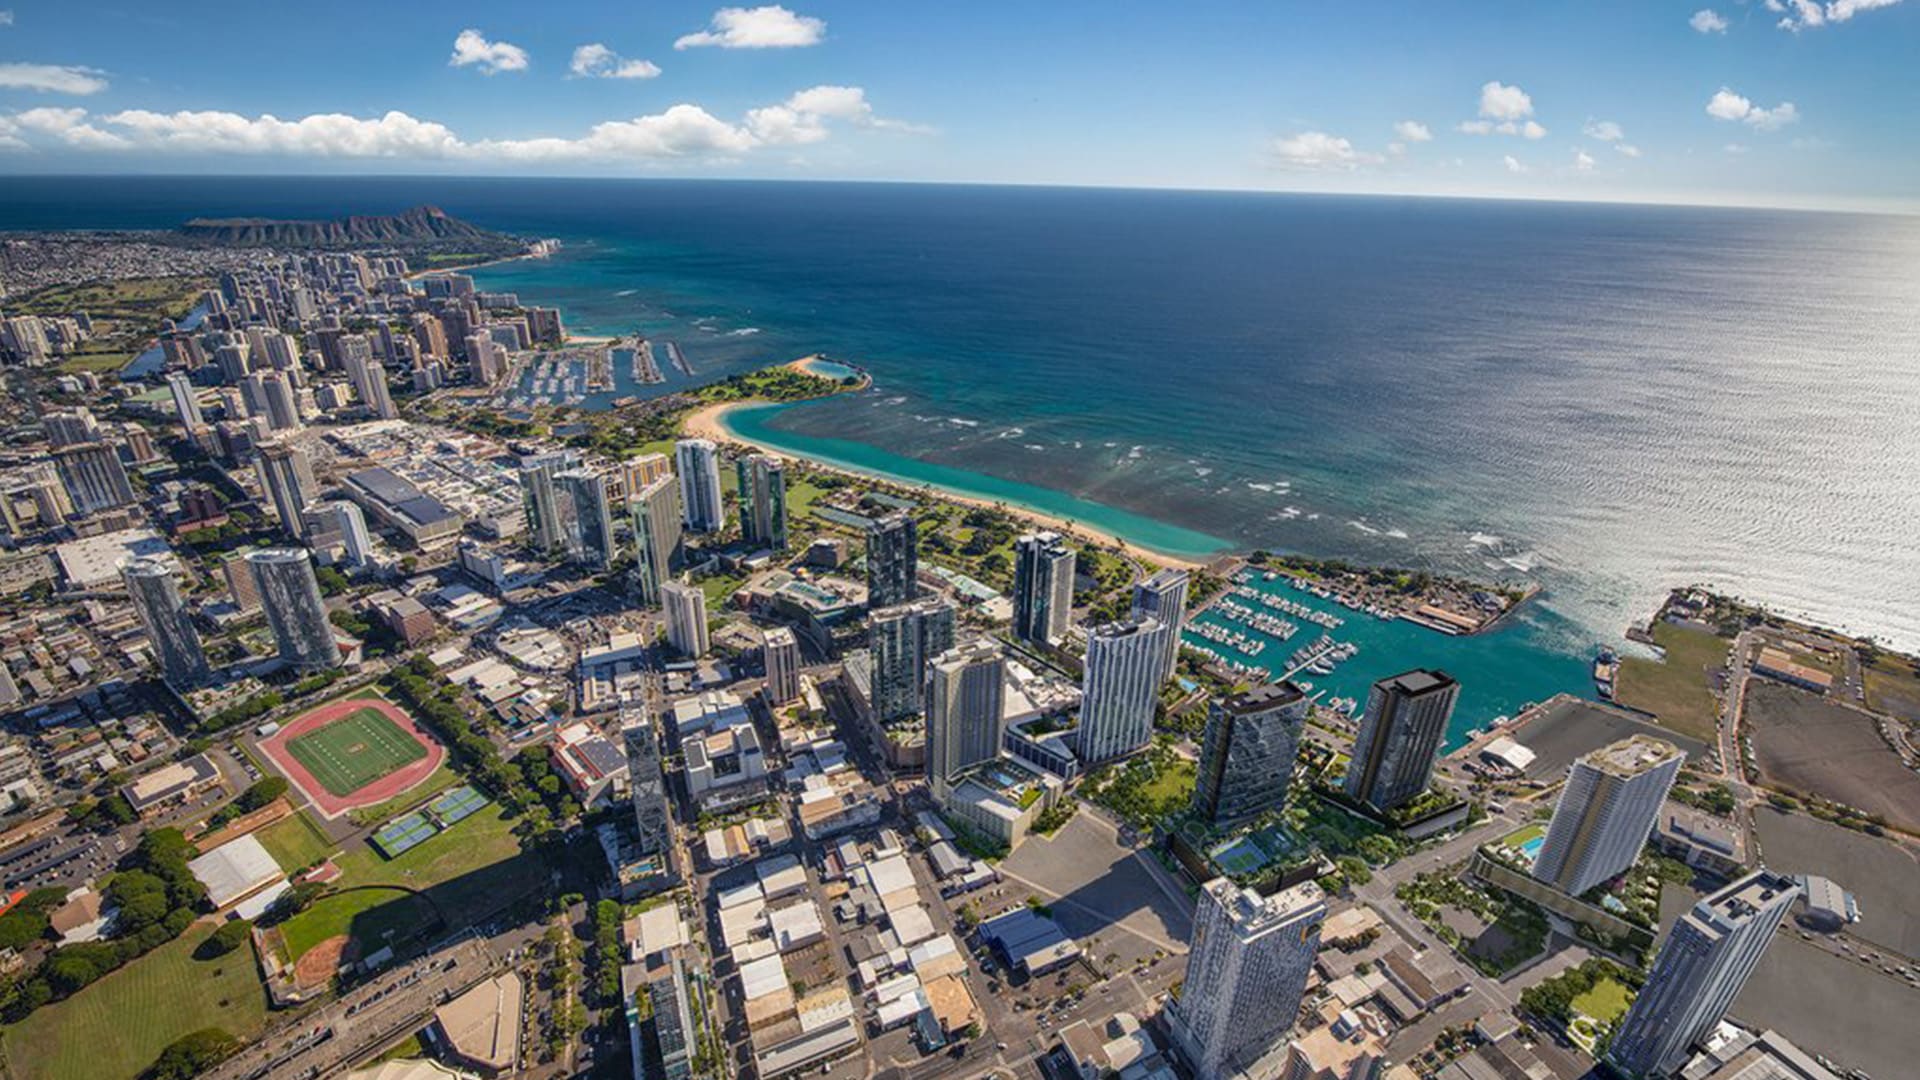 Aerial view of Ward Village, Honolulu coastline in Hawaii